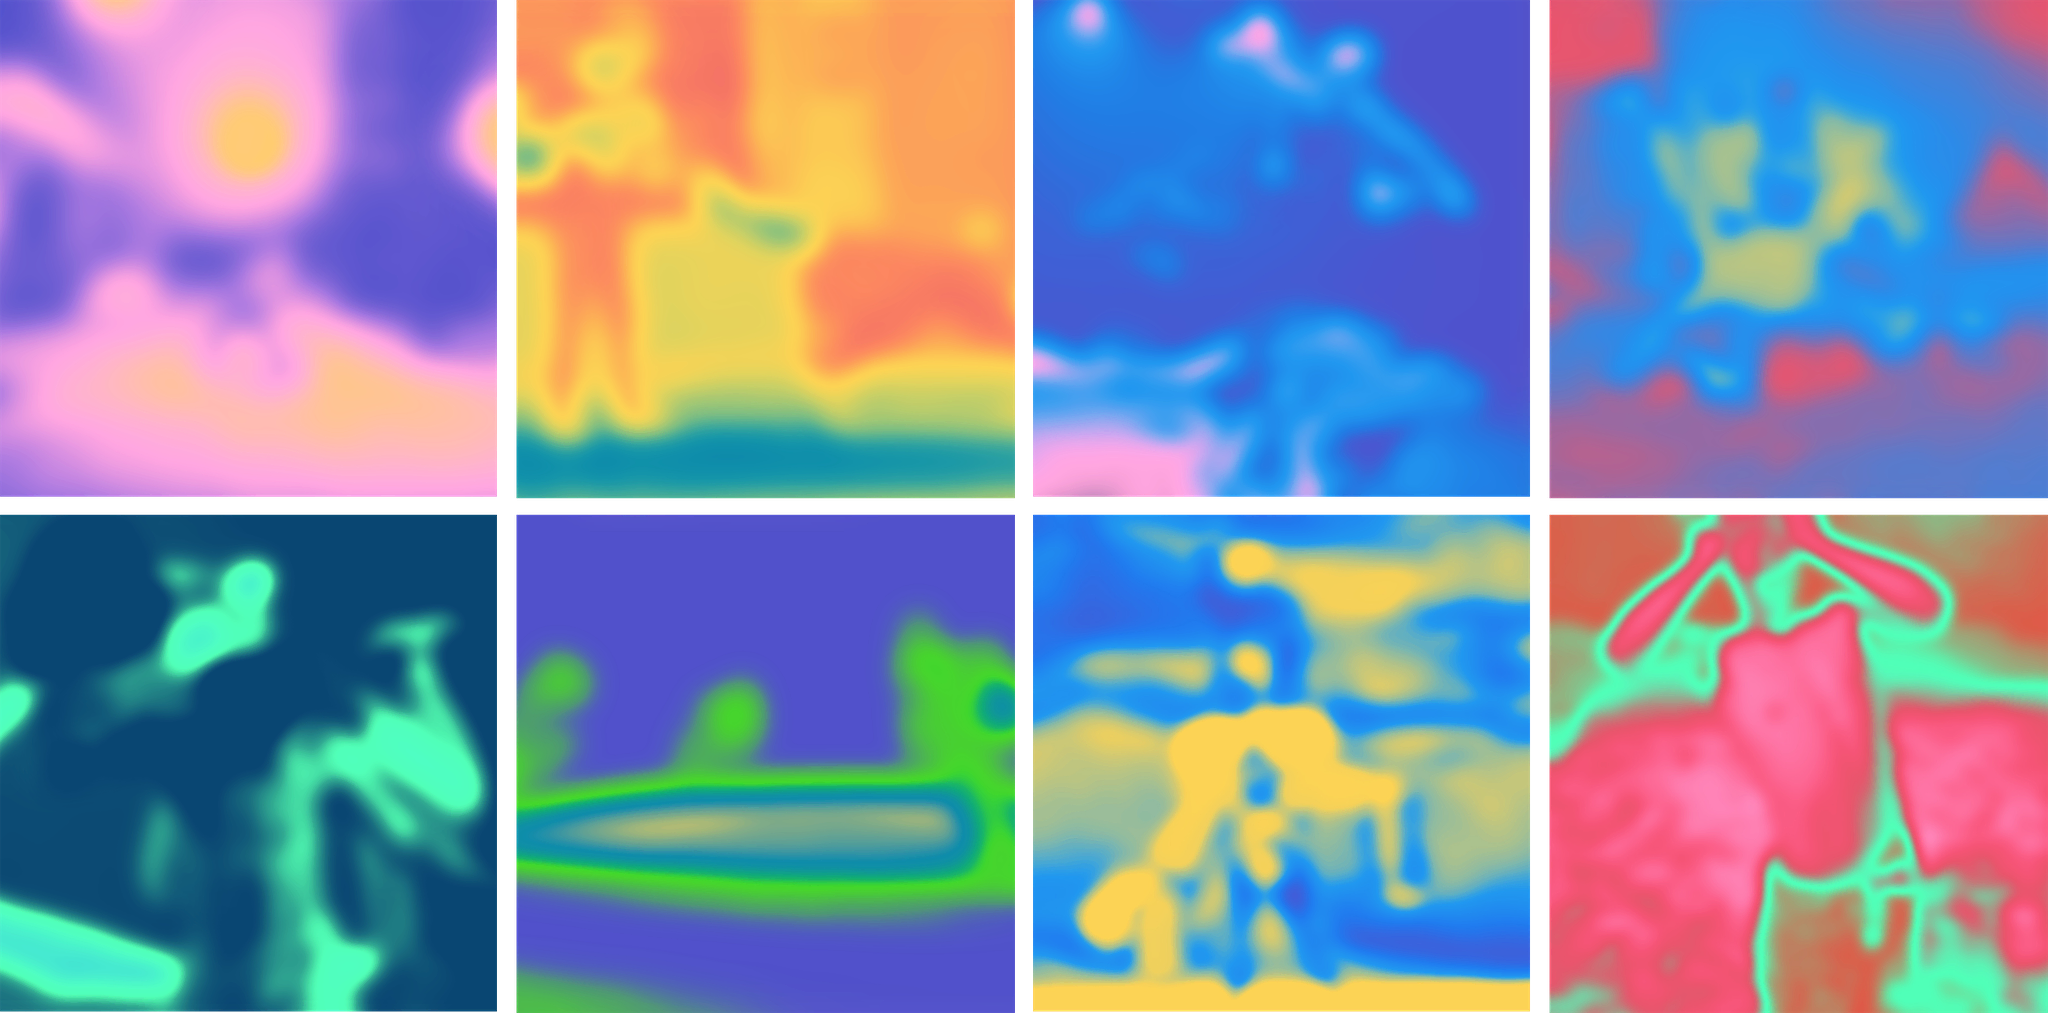 Grelha com imagens em quadrados compostos por gradientes de cores intensas.